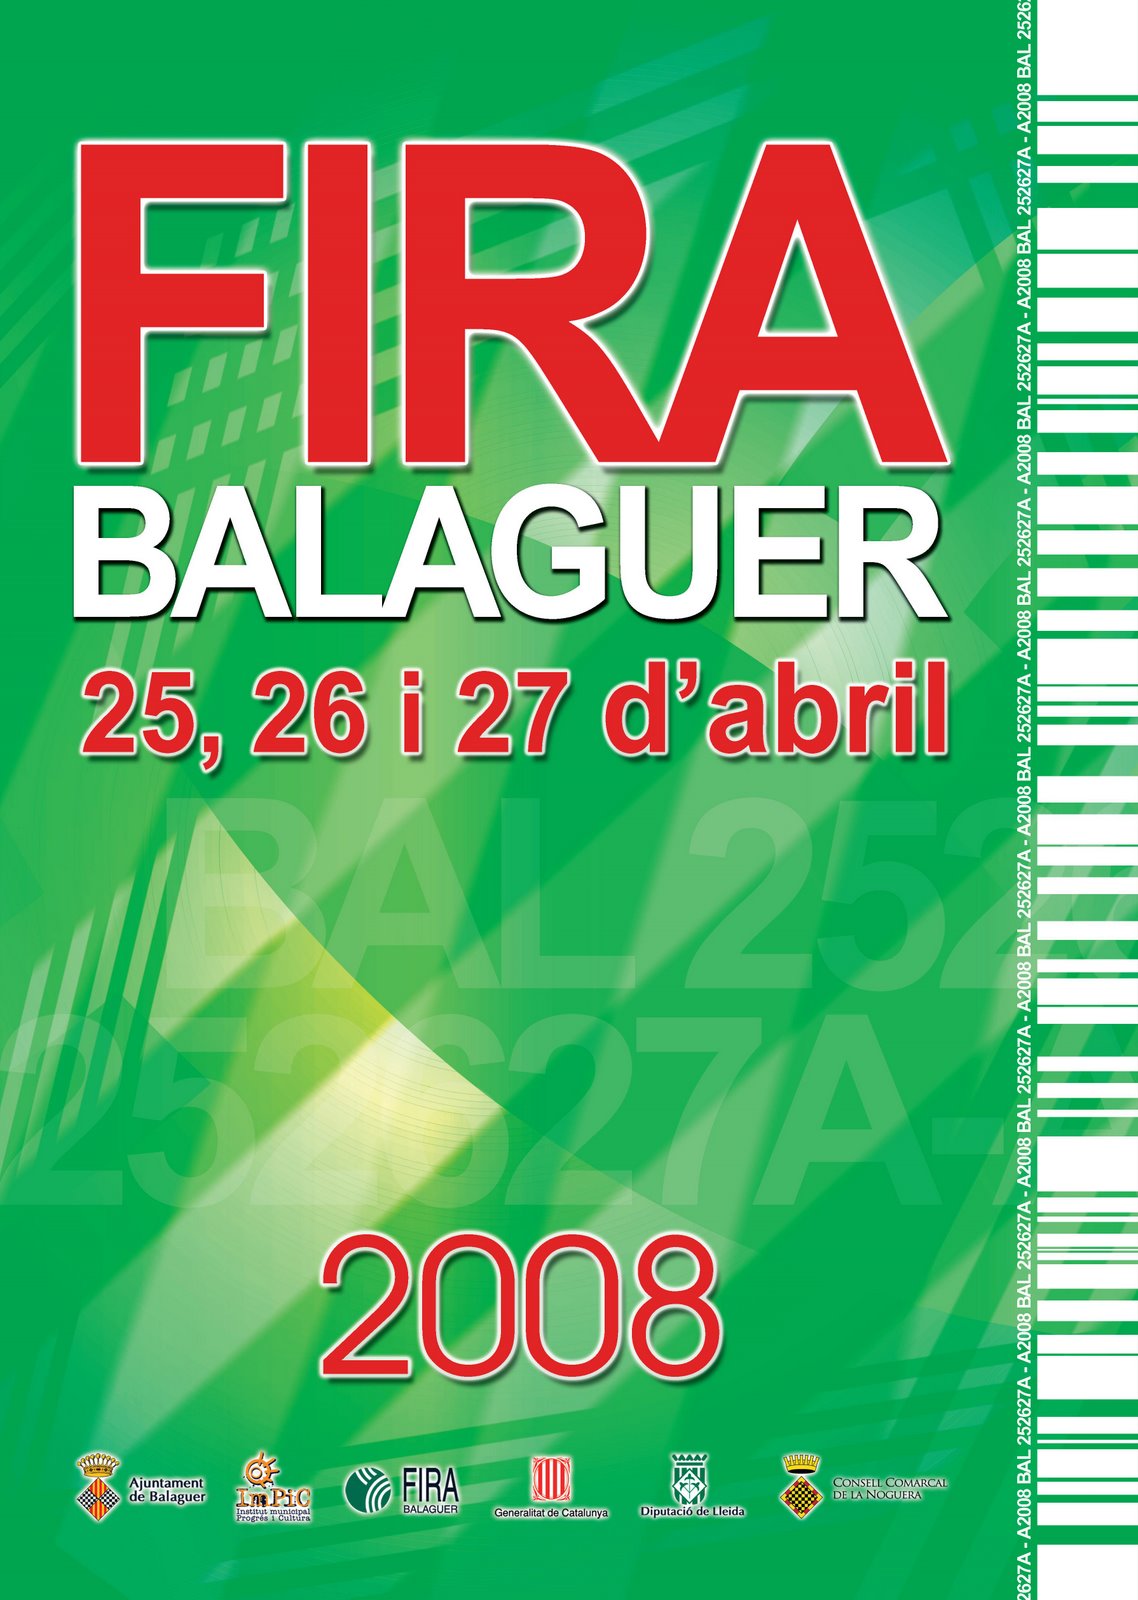 [cartell+fira+balaguer+2008.jpg]